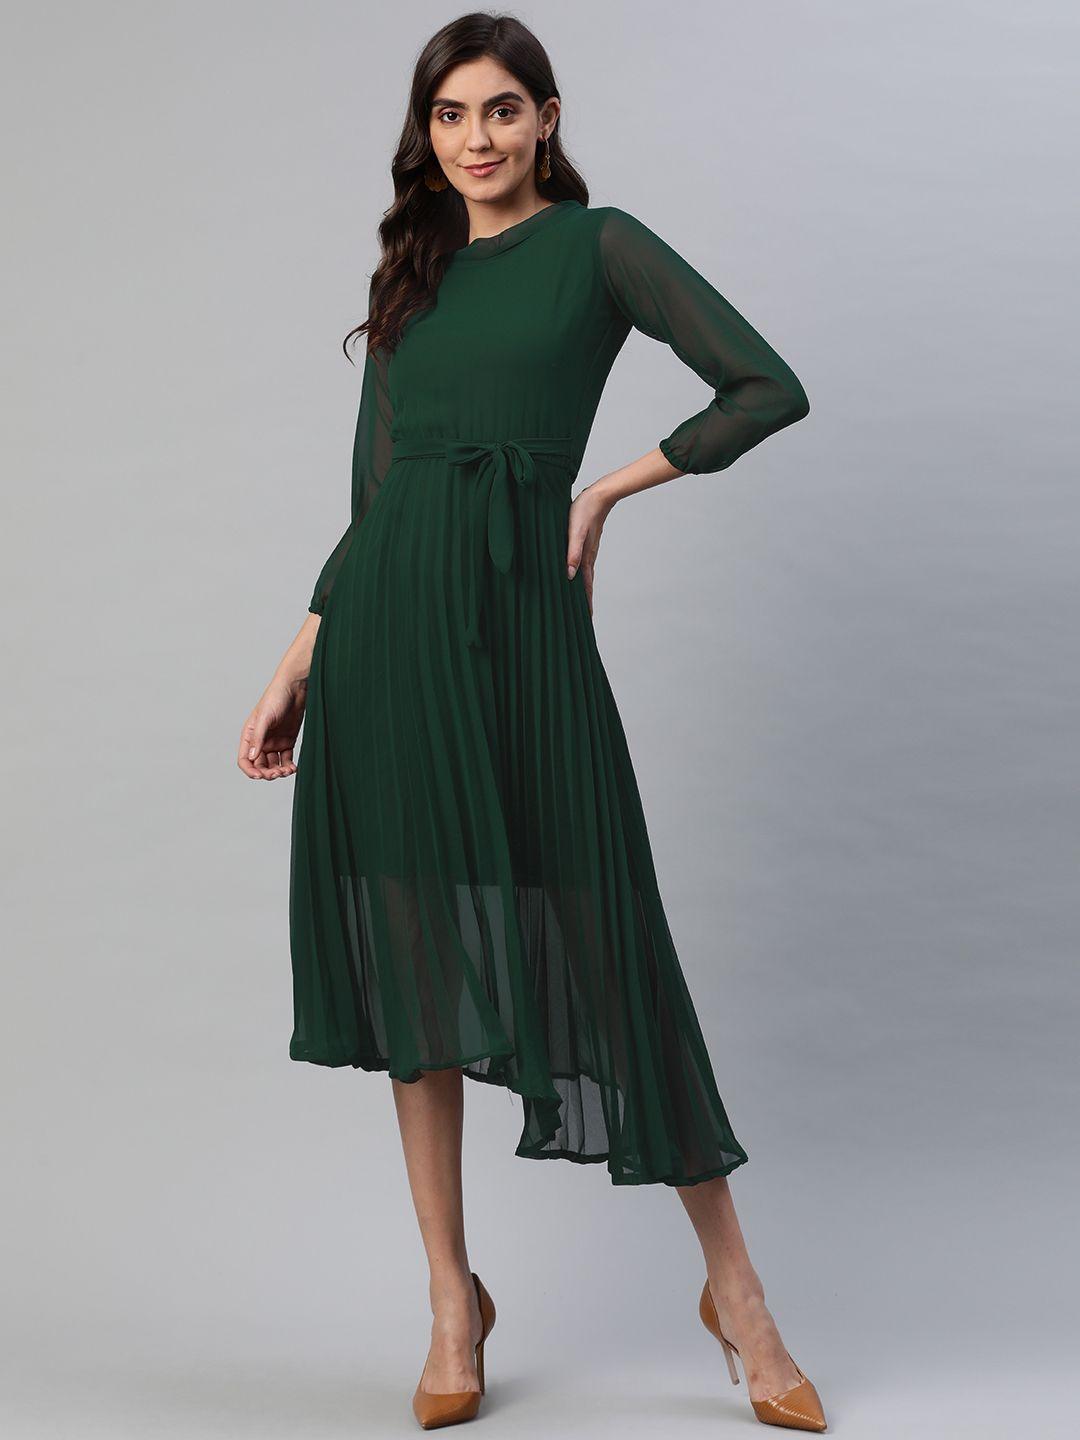 aarika-women-green-solid-a-line-midi-dress